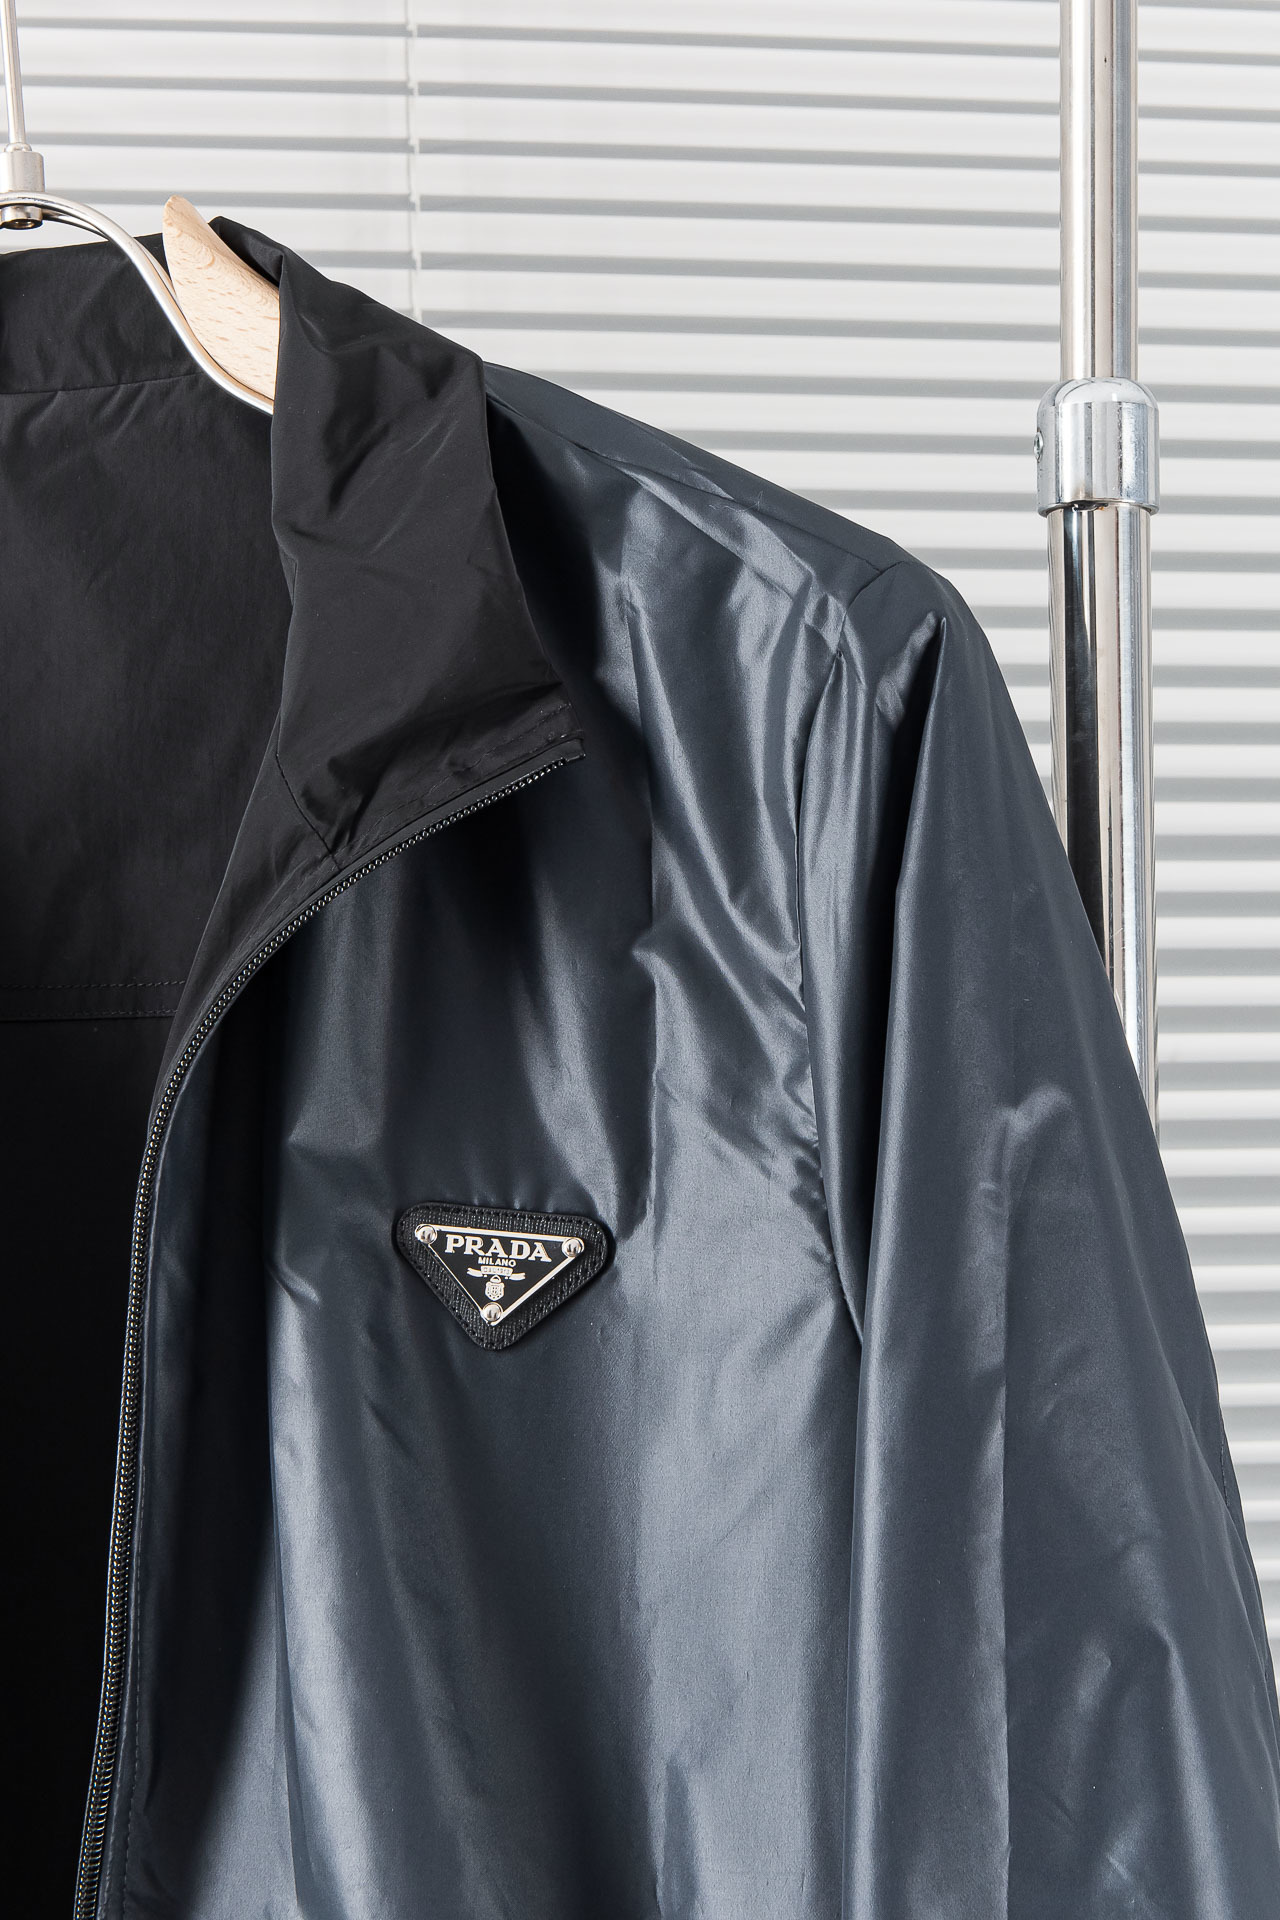 New#️Prada普拉达24SS春季新品简约大方双面穿夹克进口原版高品质聚酯纤维面料垂度和光泽绝对是提